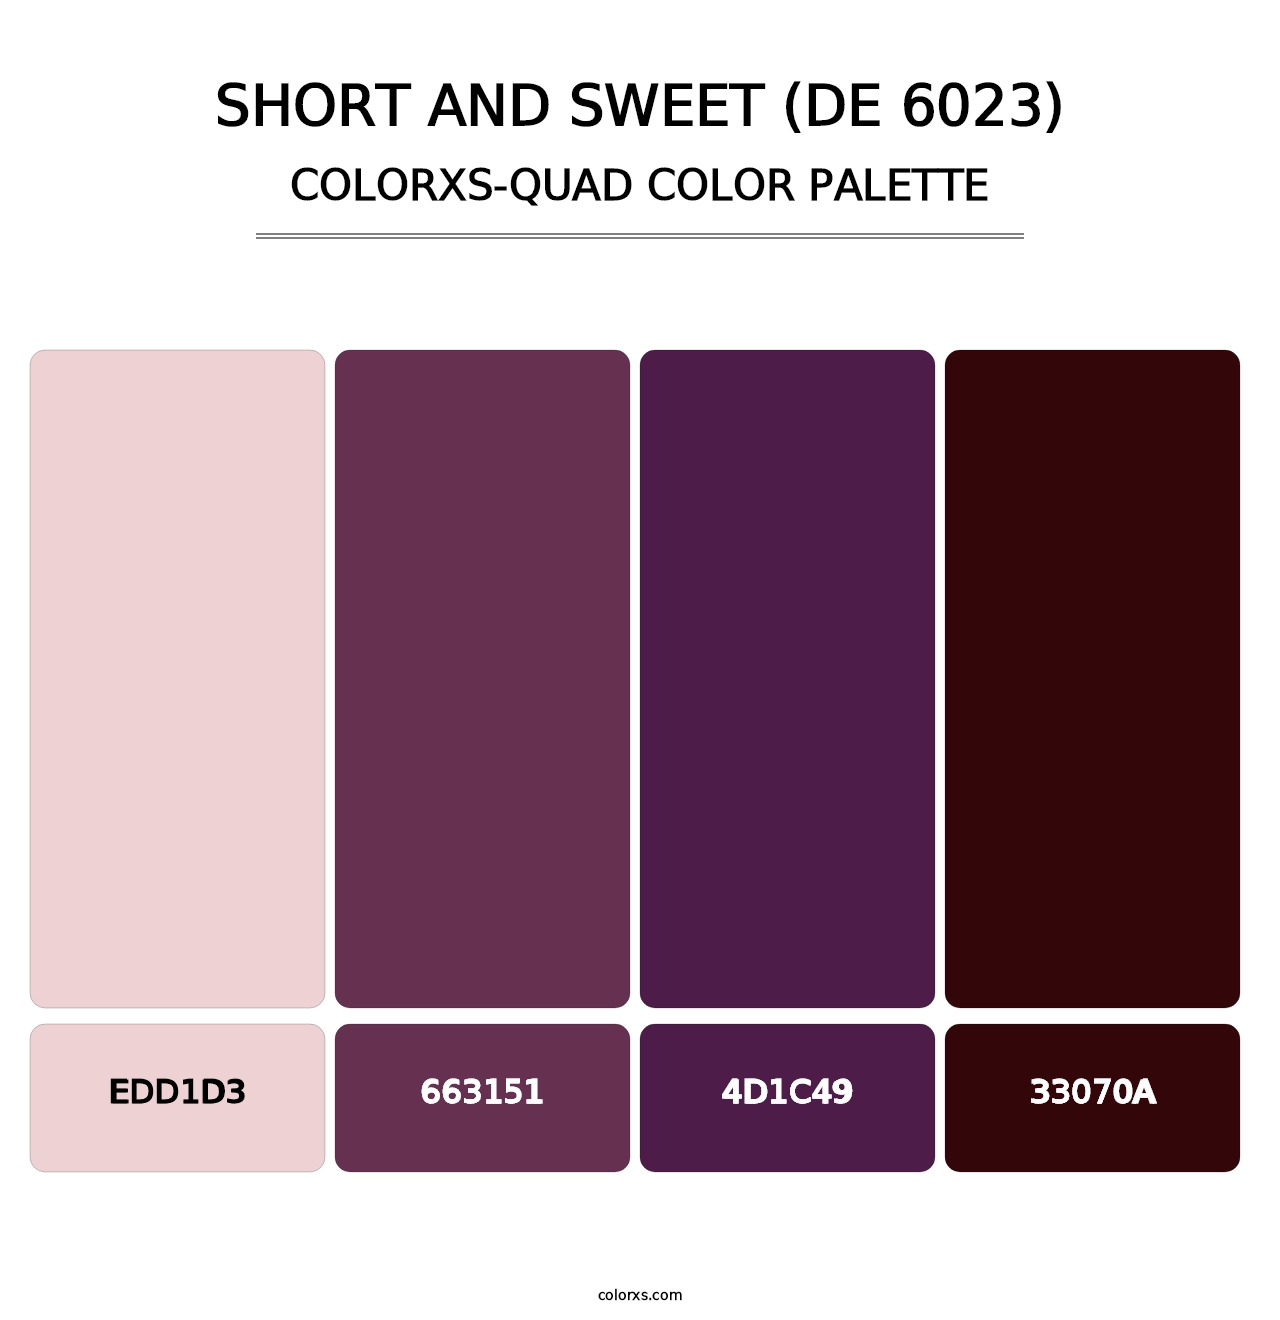 Short and Sweet (DE 6023) - Colorxs Quad Palette